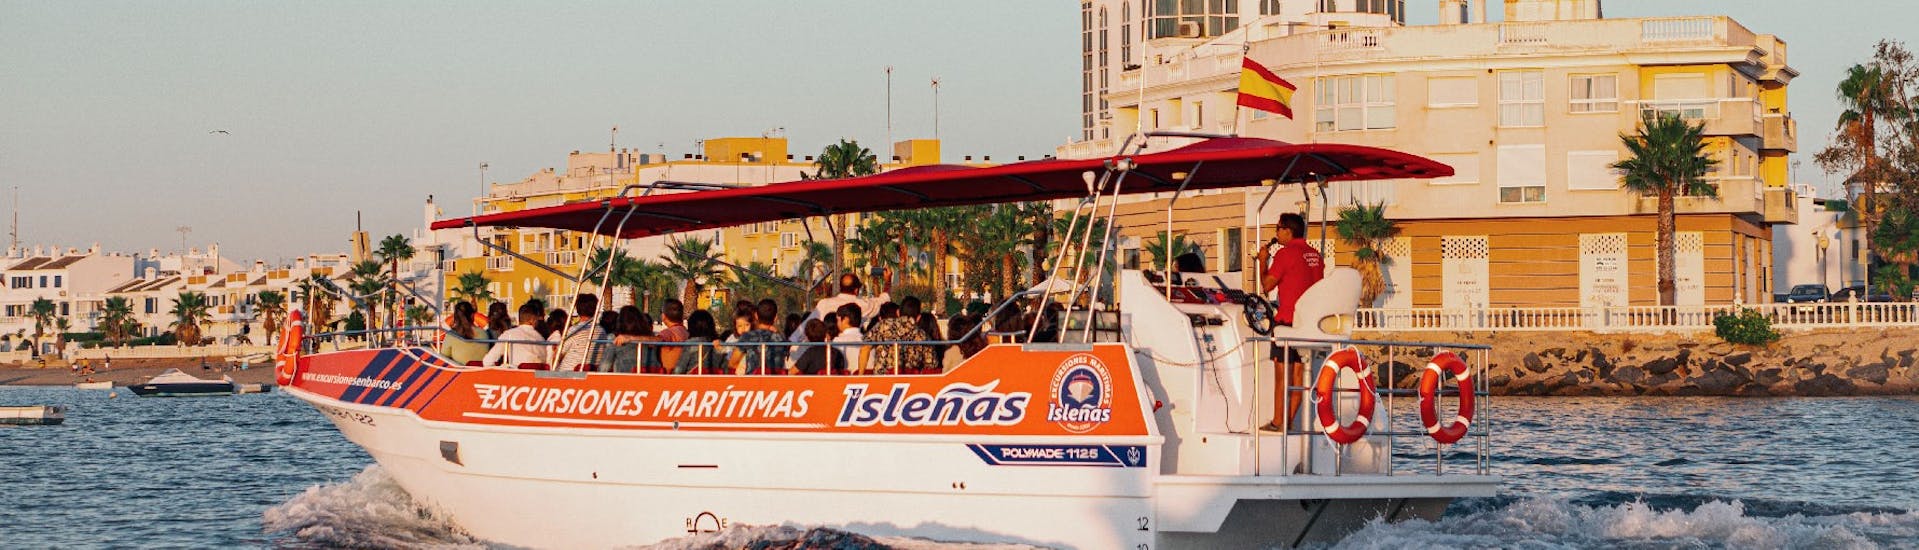 Boat Trip along The Marismas de Isla Cristina from Excursiones Marítimas Isleñas Huelva.